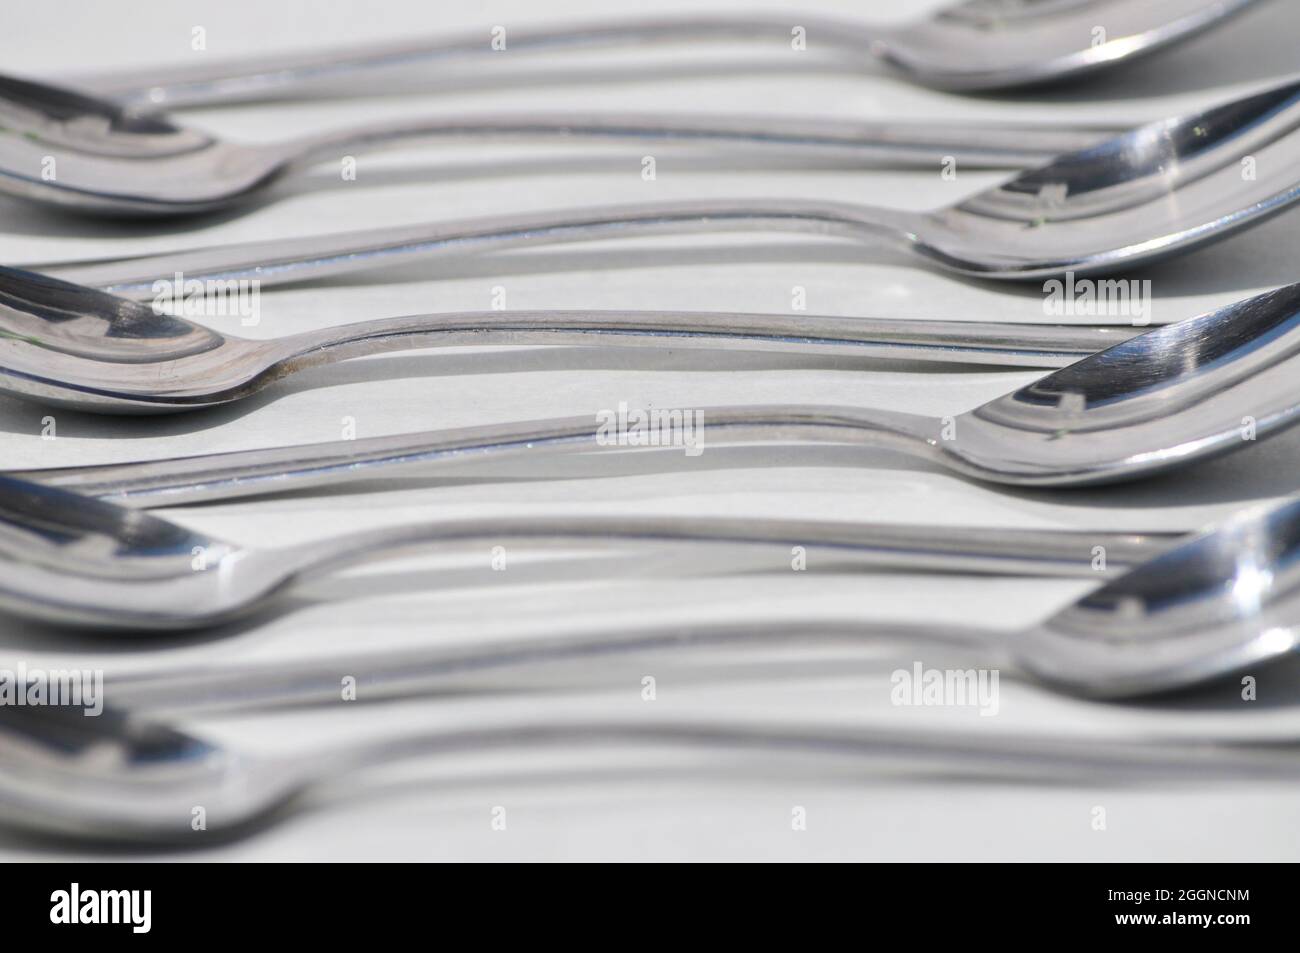 Cucchiai di acciaio inossidabile disposti su sfondo bianco in un motivo ricorrente Foto Stock